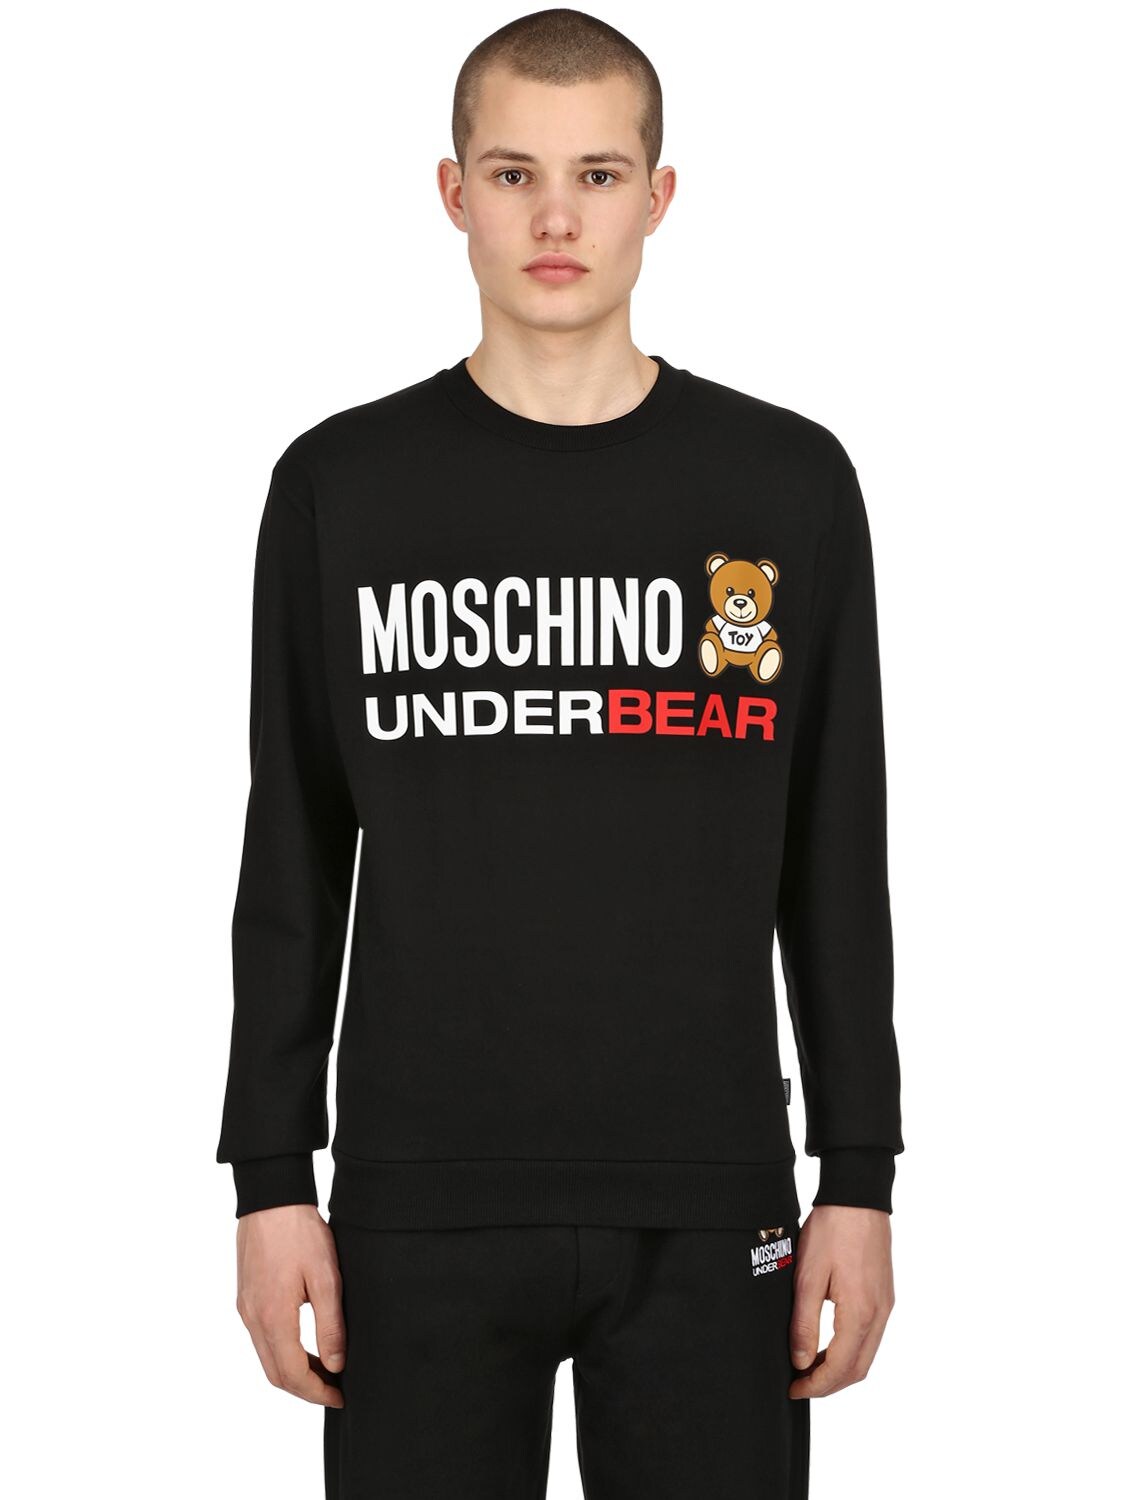 Moschino Underwear Printed Cotton Sweatshirt In Black